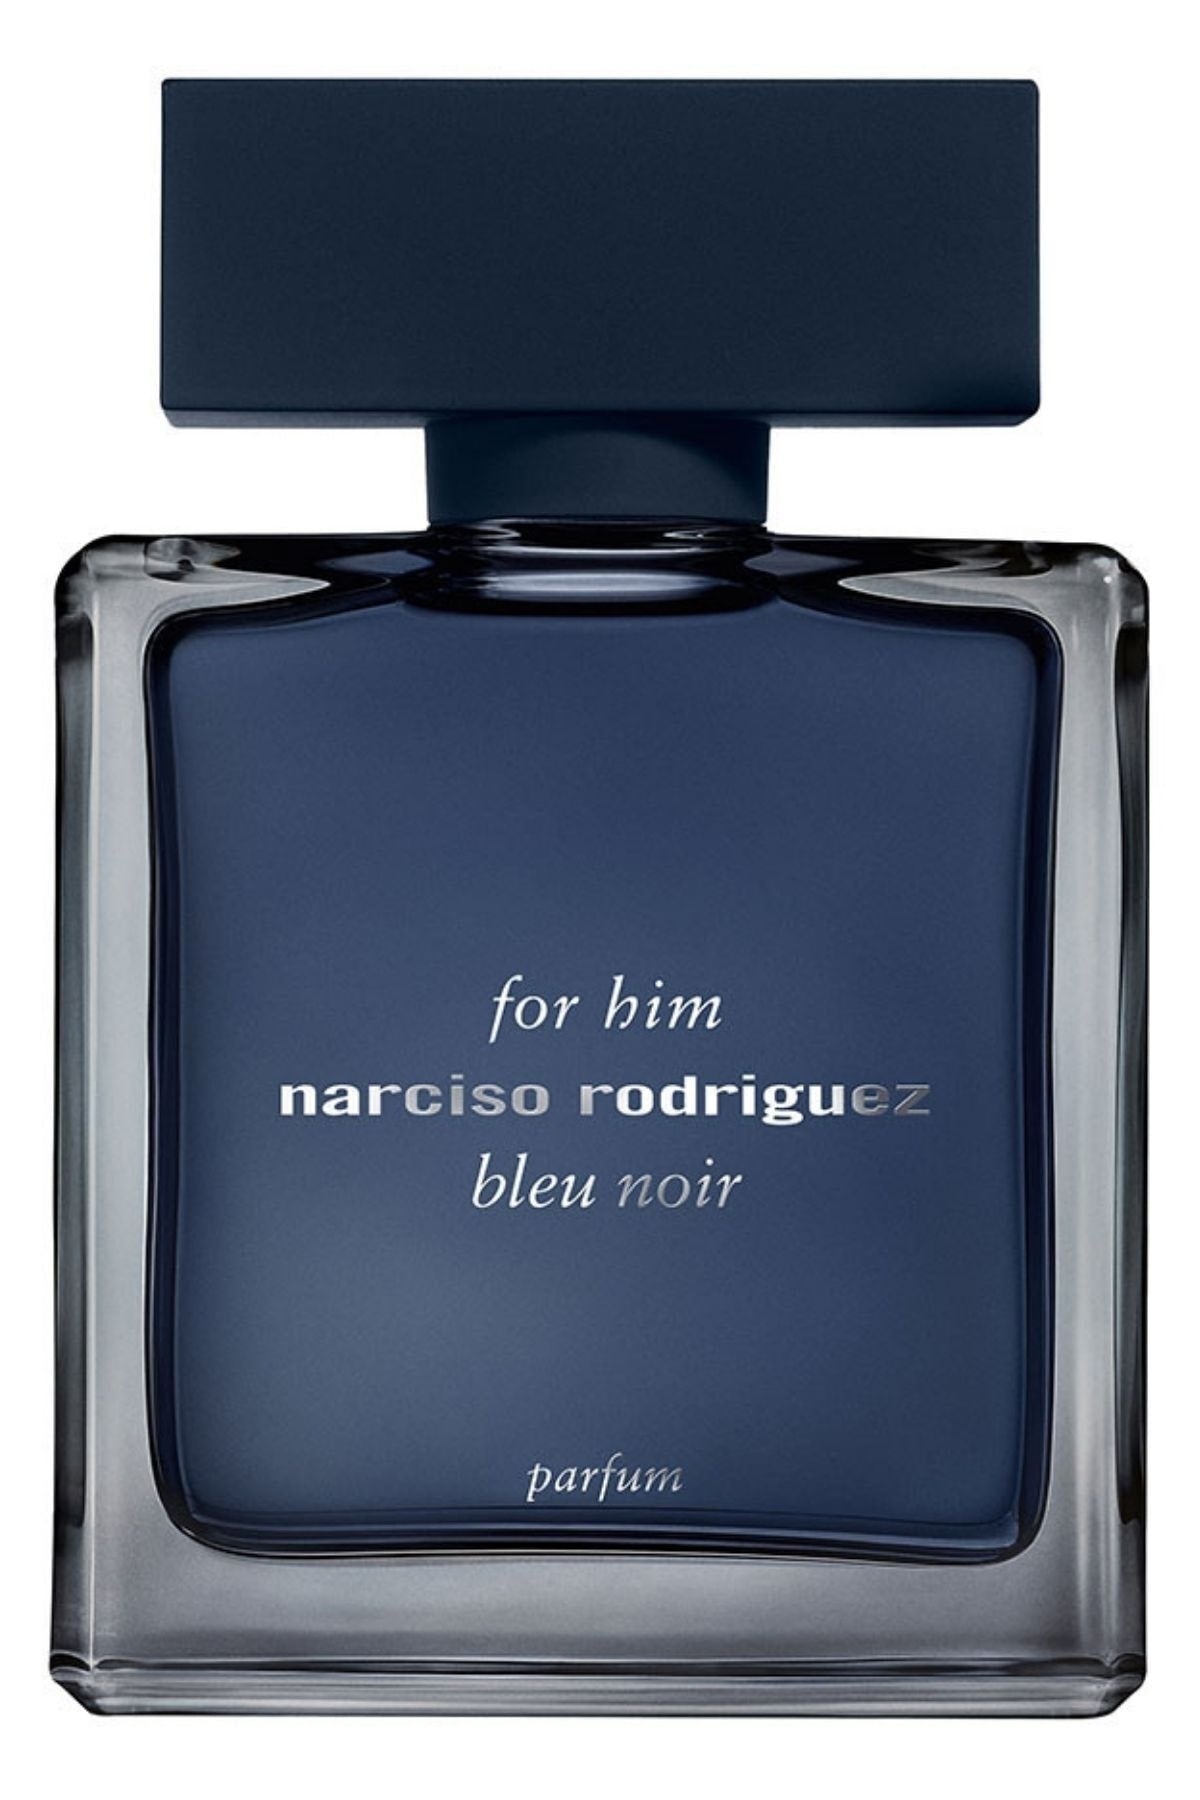 (Limit 1) Narciso Rodriguez Bleu Noir Parfum M 100ml Boxed